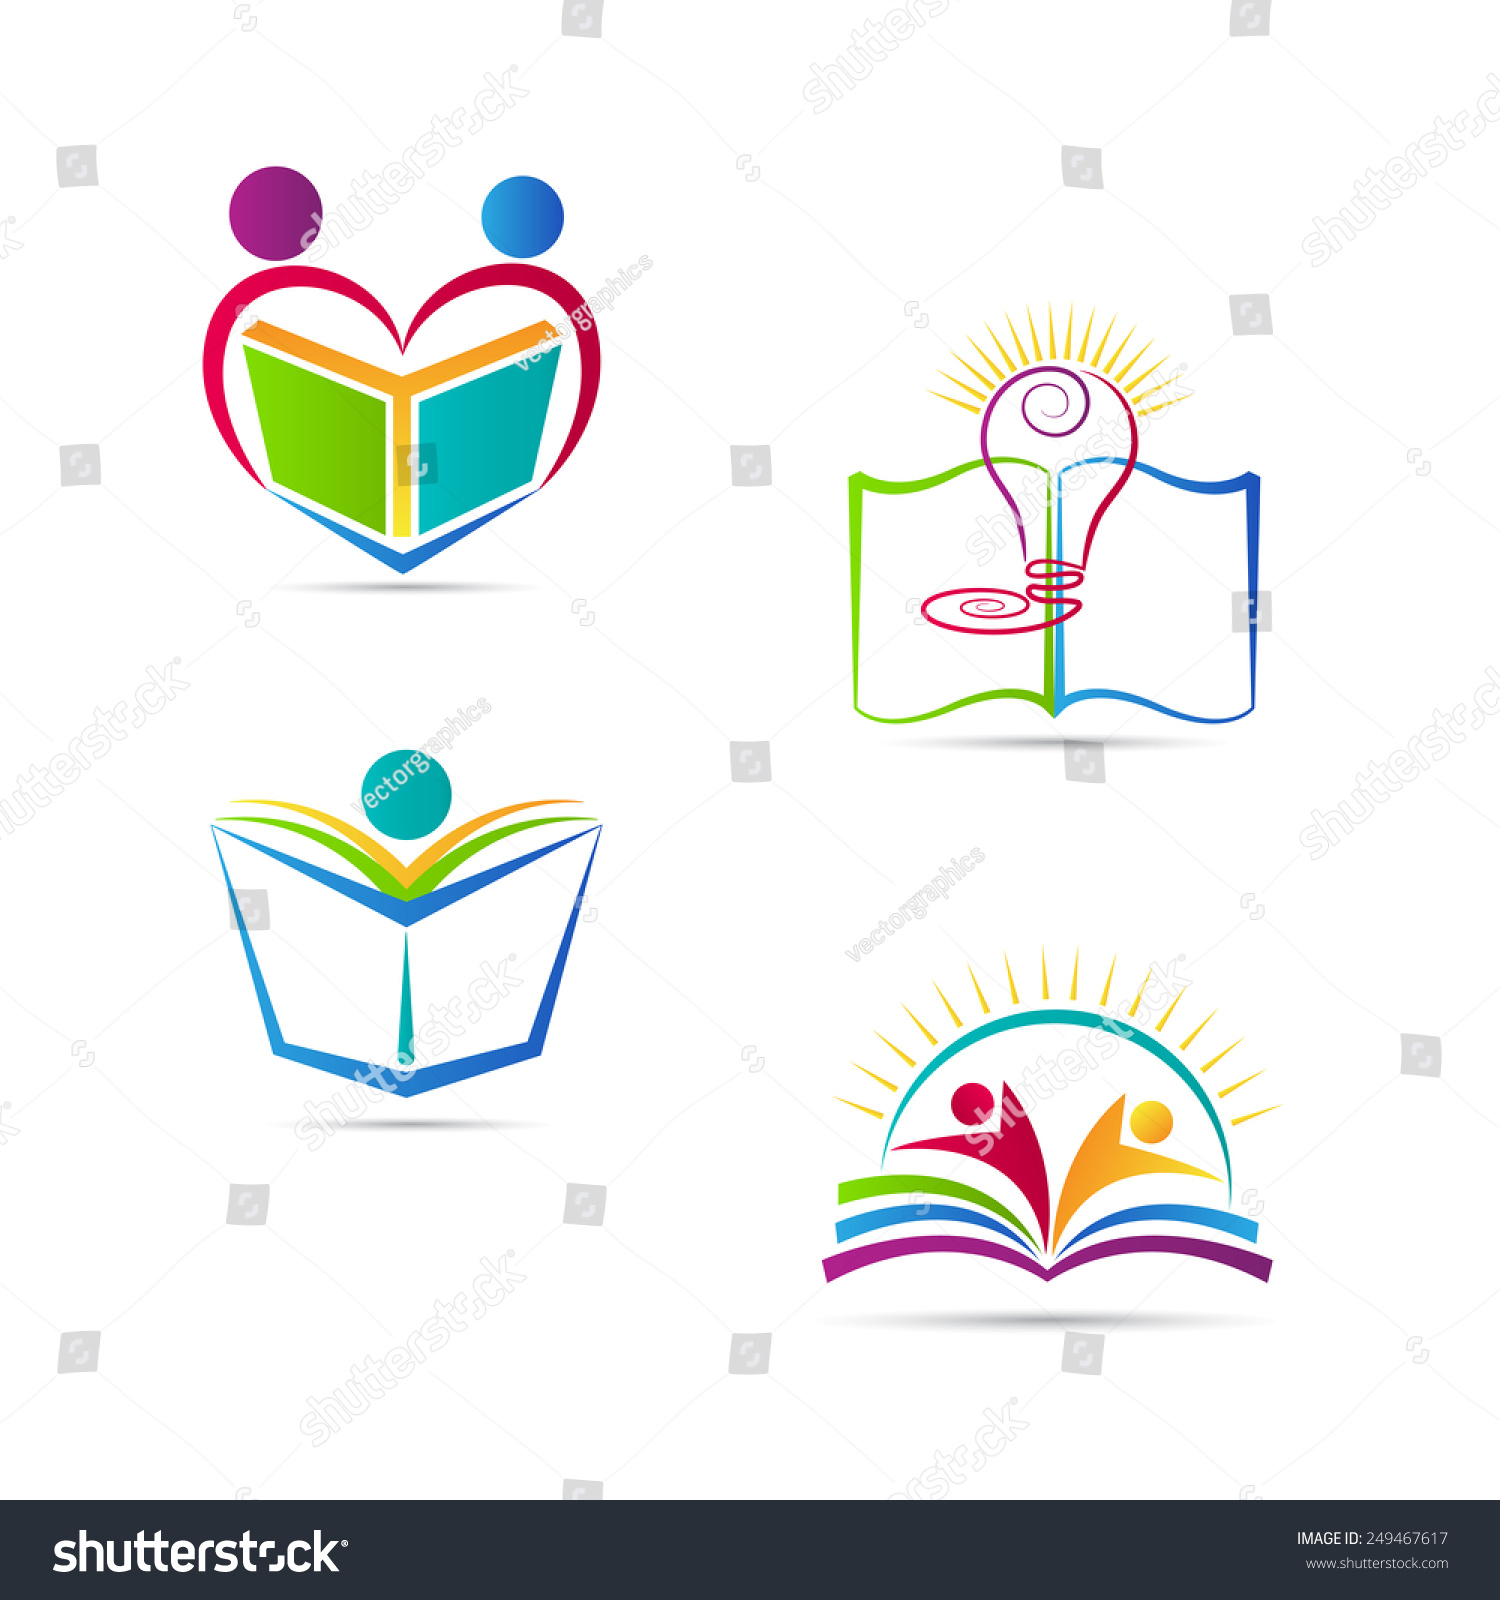 Education Book Logo Vector Design Represents Stock Vector (Royalty Free ...